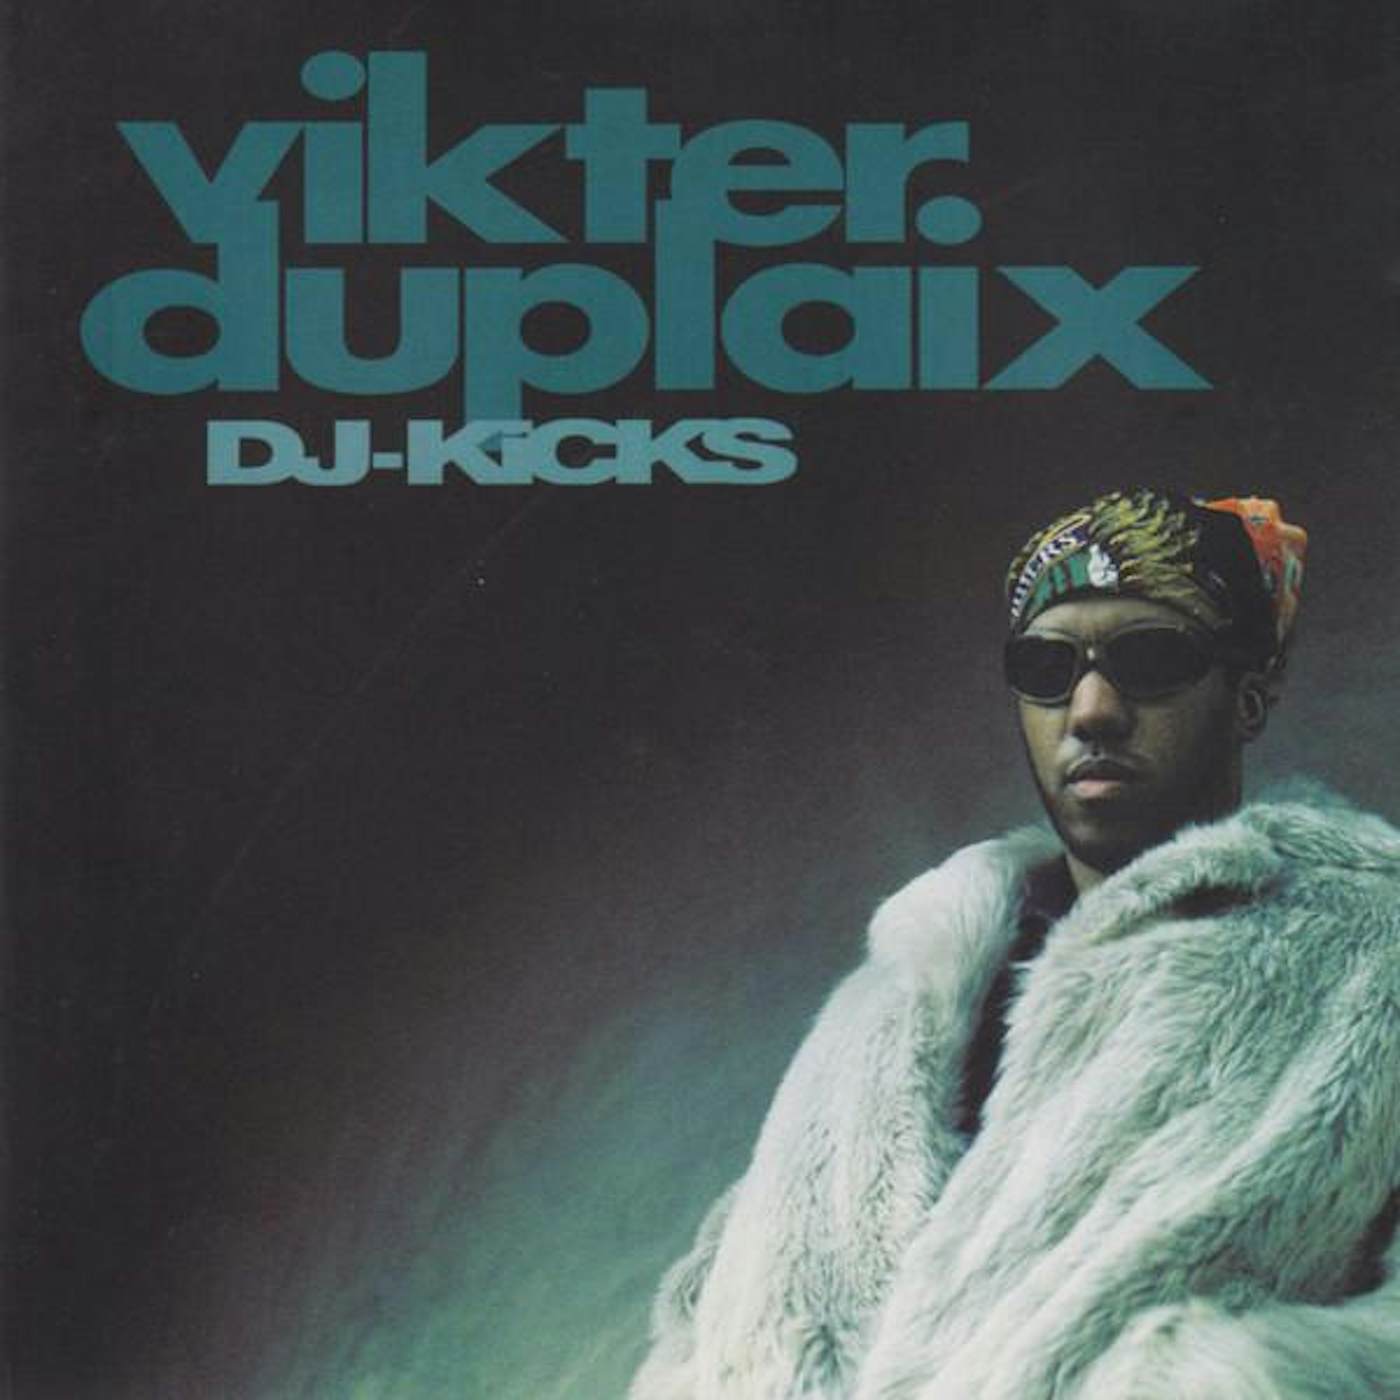 Vikter Duplaix DJ-KICKS CD